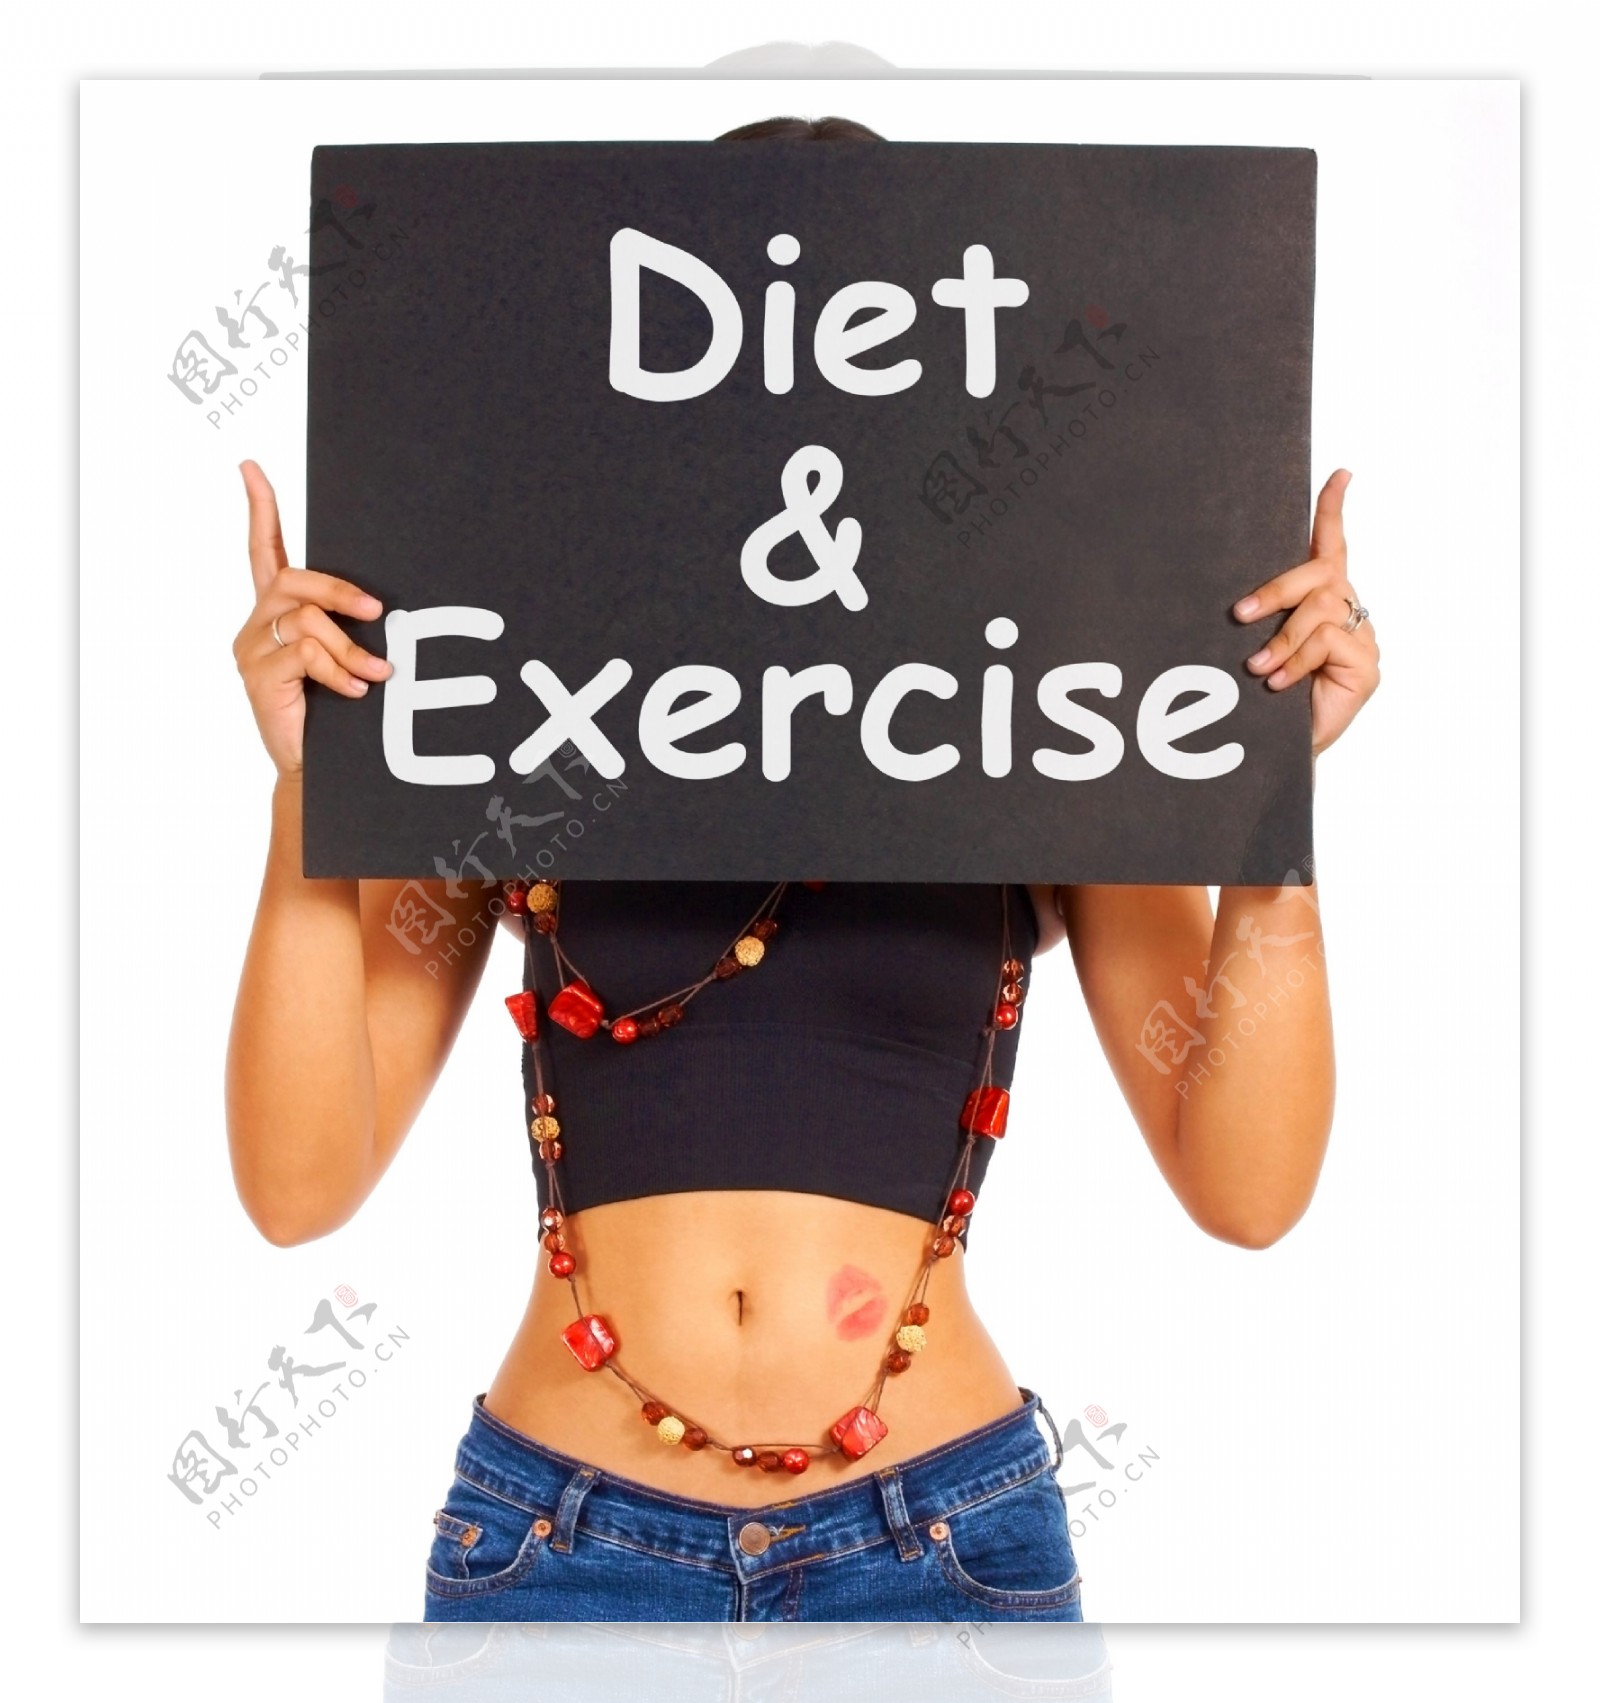 饮食和运动的迹象表明减肥的建议